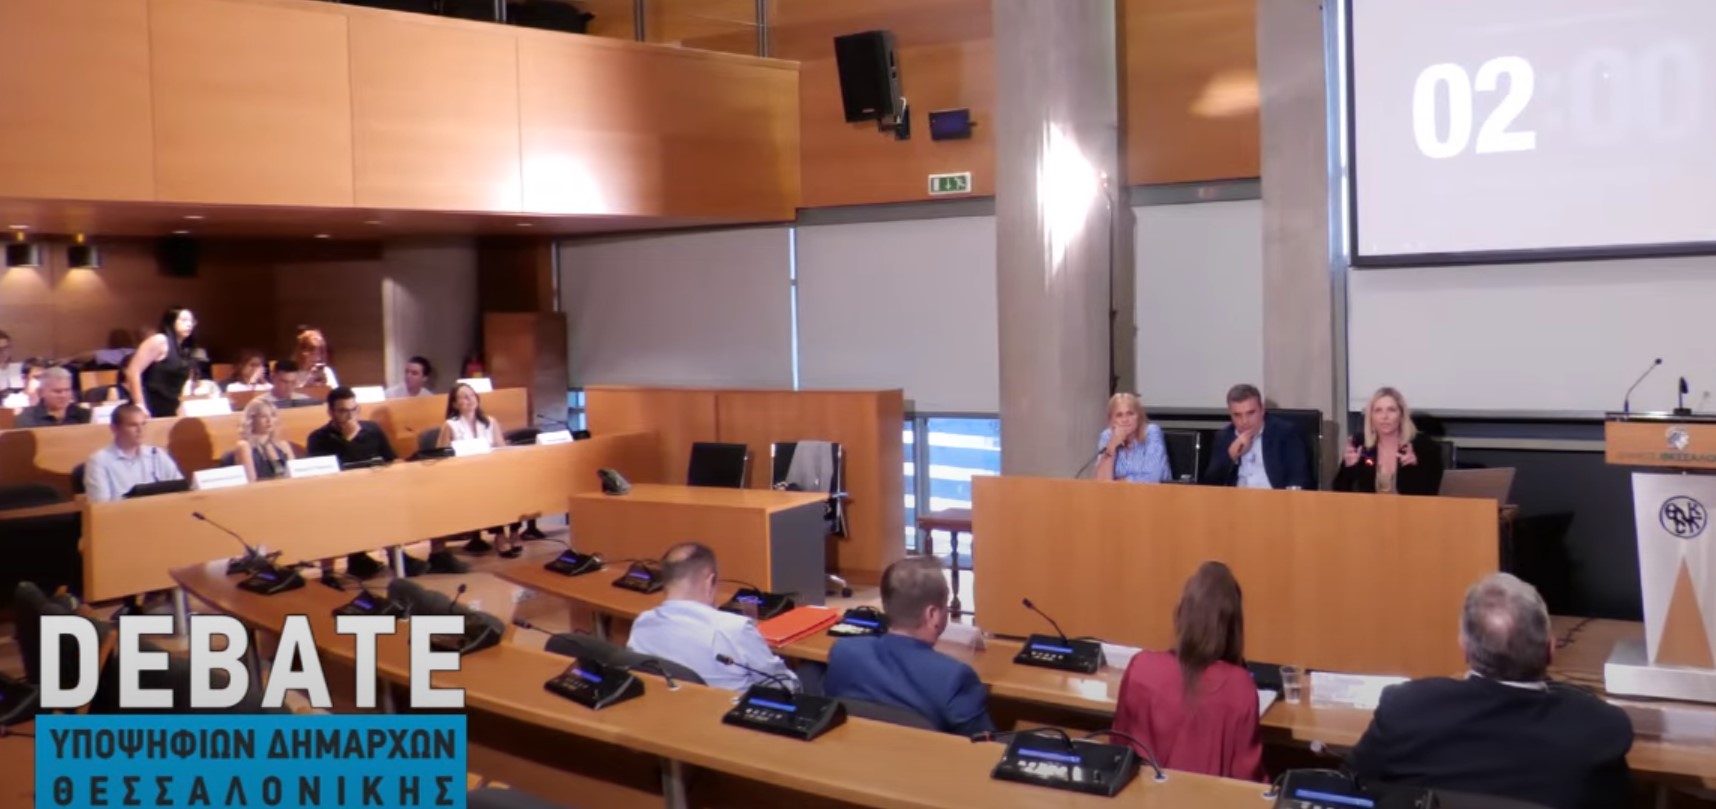 Ολοκληρώθηκε το debate υποψηφίων δημάρχων Θεσσαλονίκης με ερωτήματα από φοιτητές Δημοσιογραφίας του ΑΠΘ